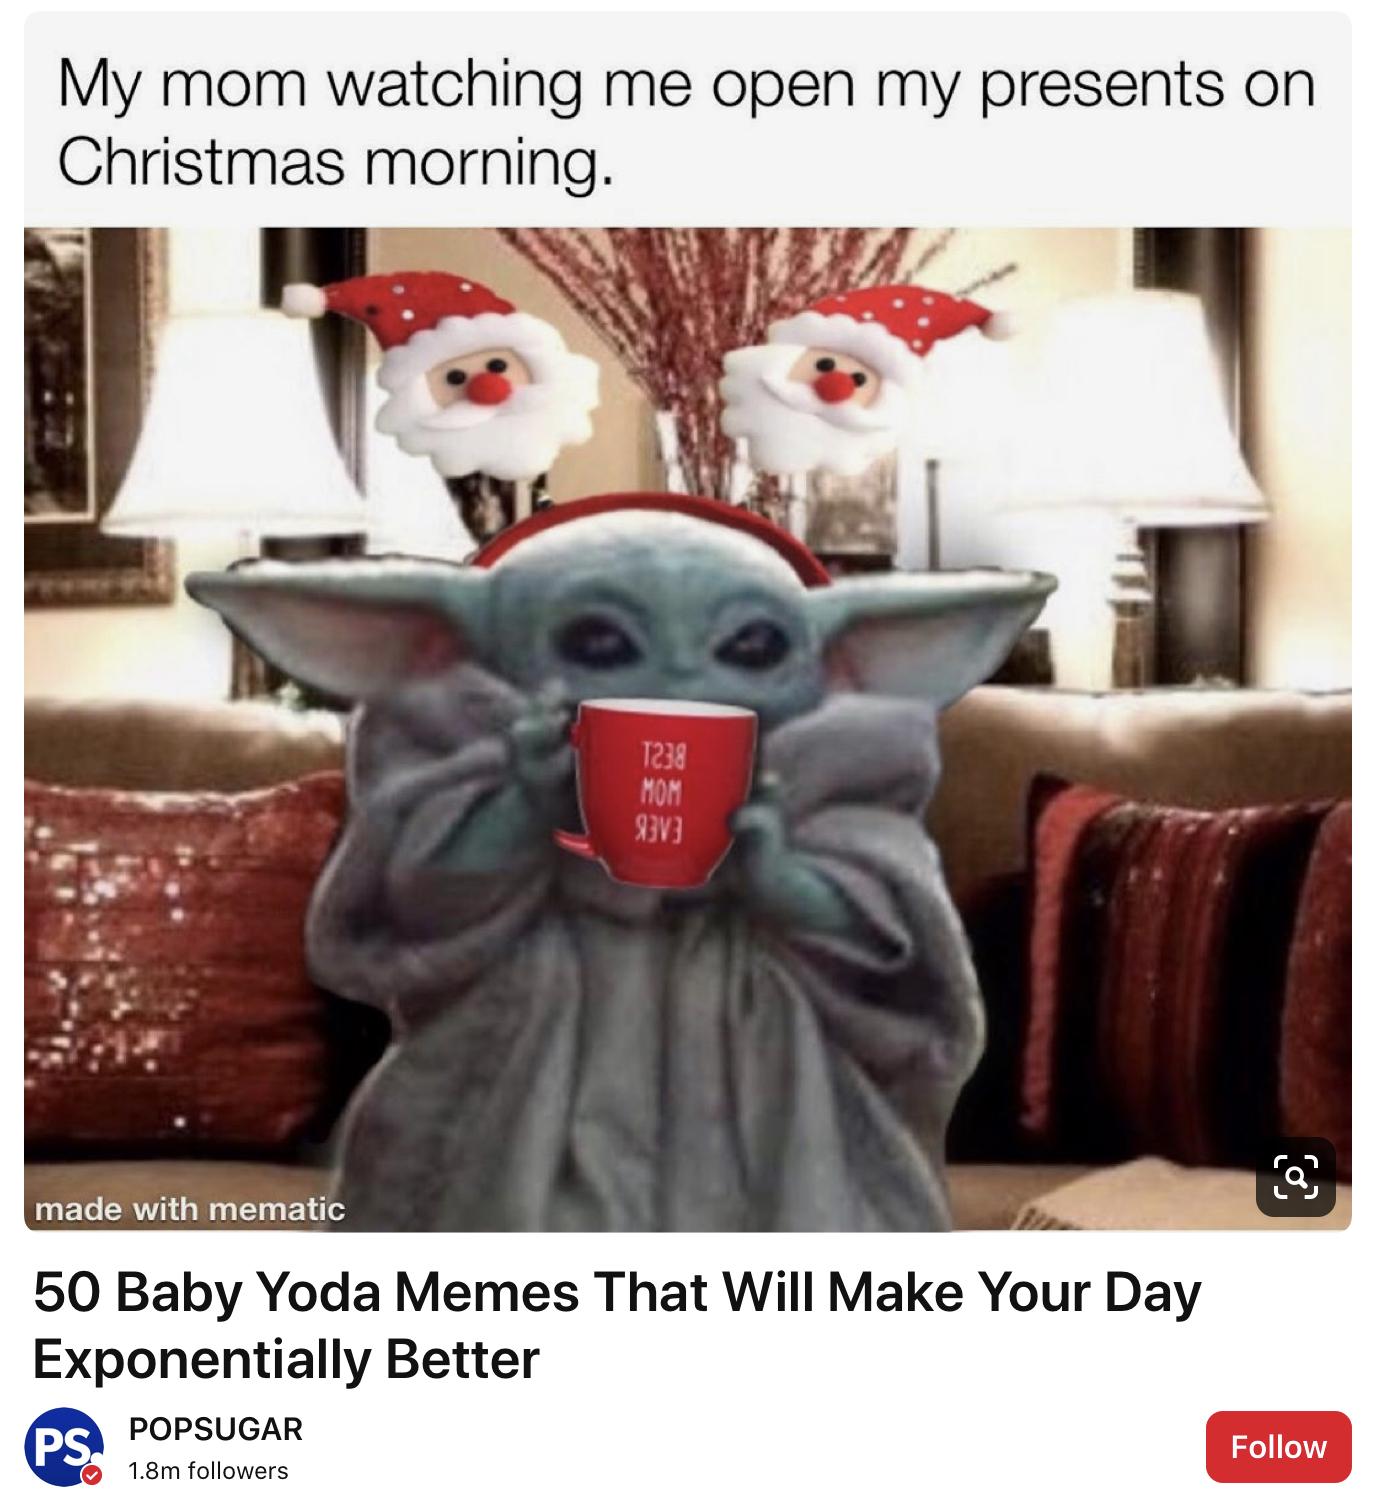 10 Adorable Baby Yoda Memes For Christmas Live One Good Life